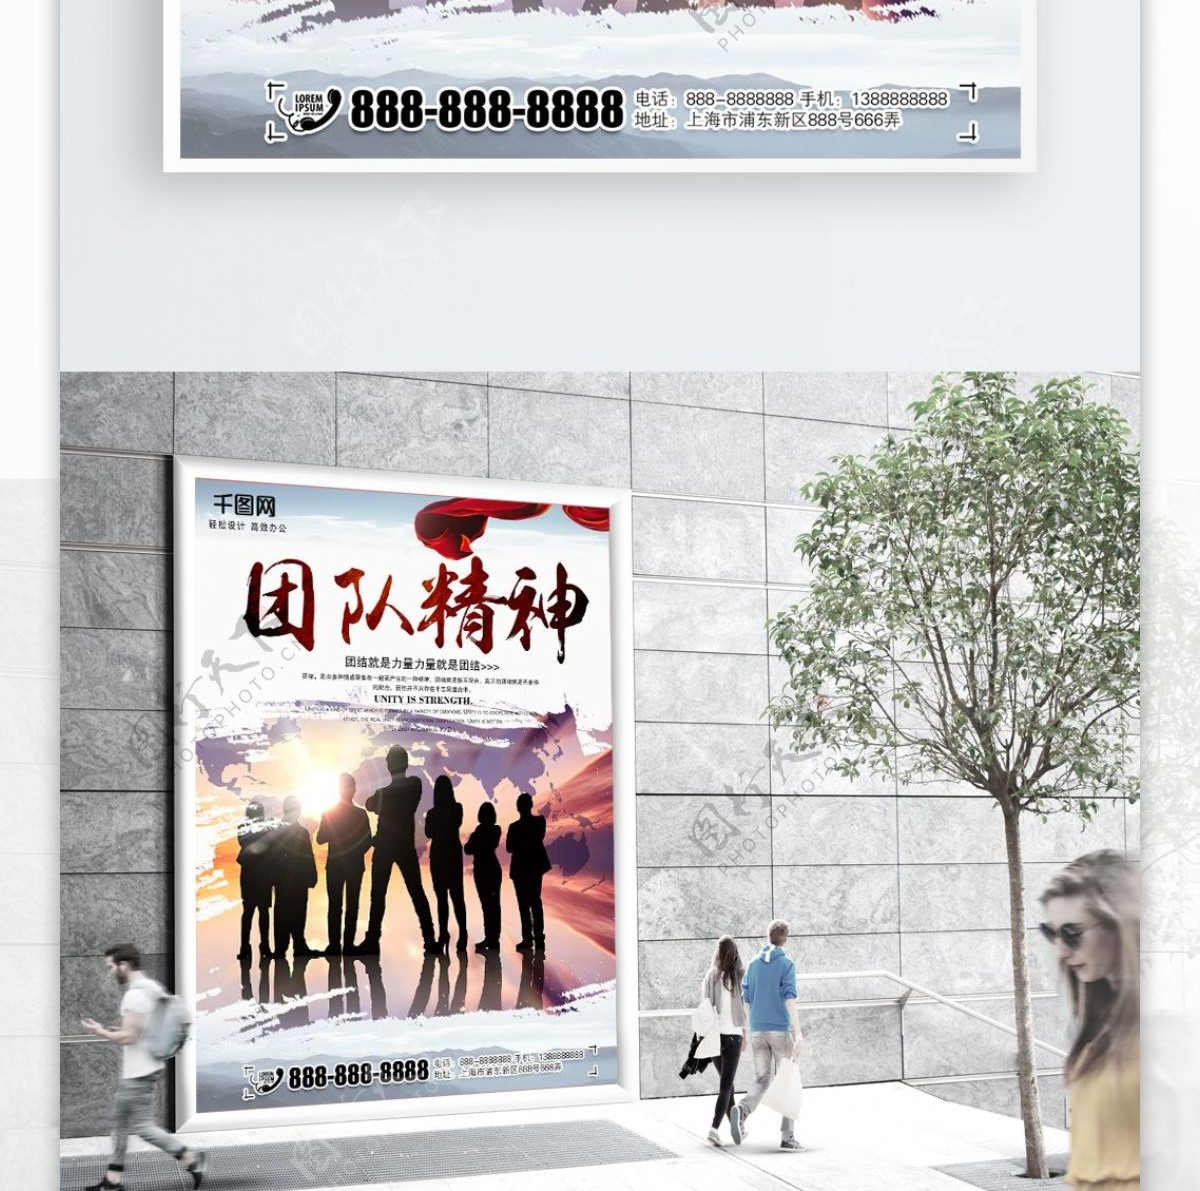 平面企业文化团队精神中国风简约文化海报